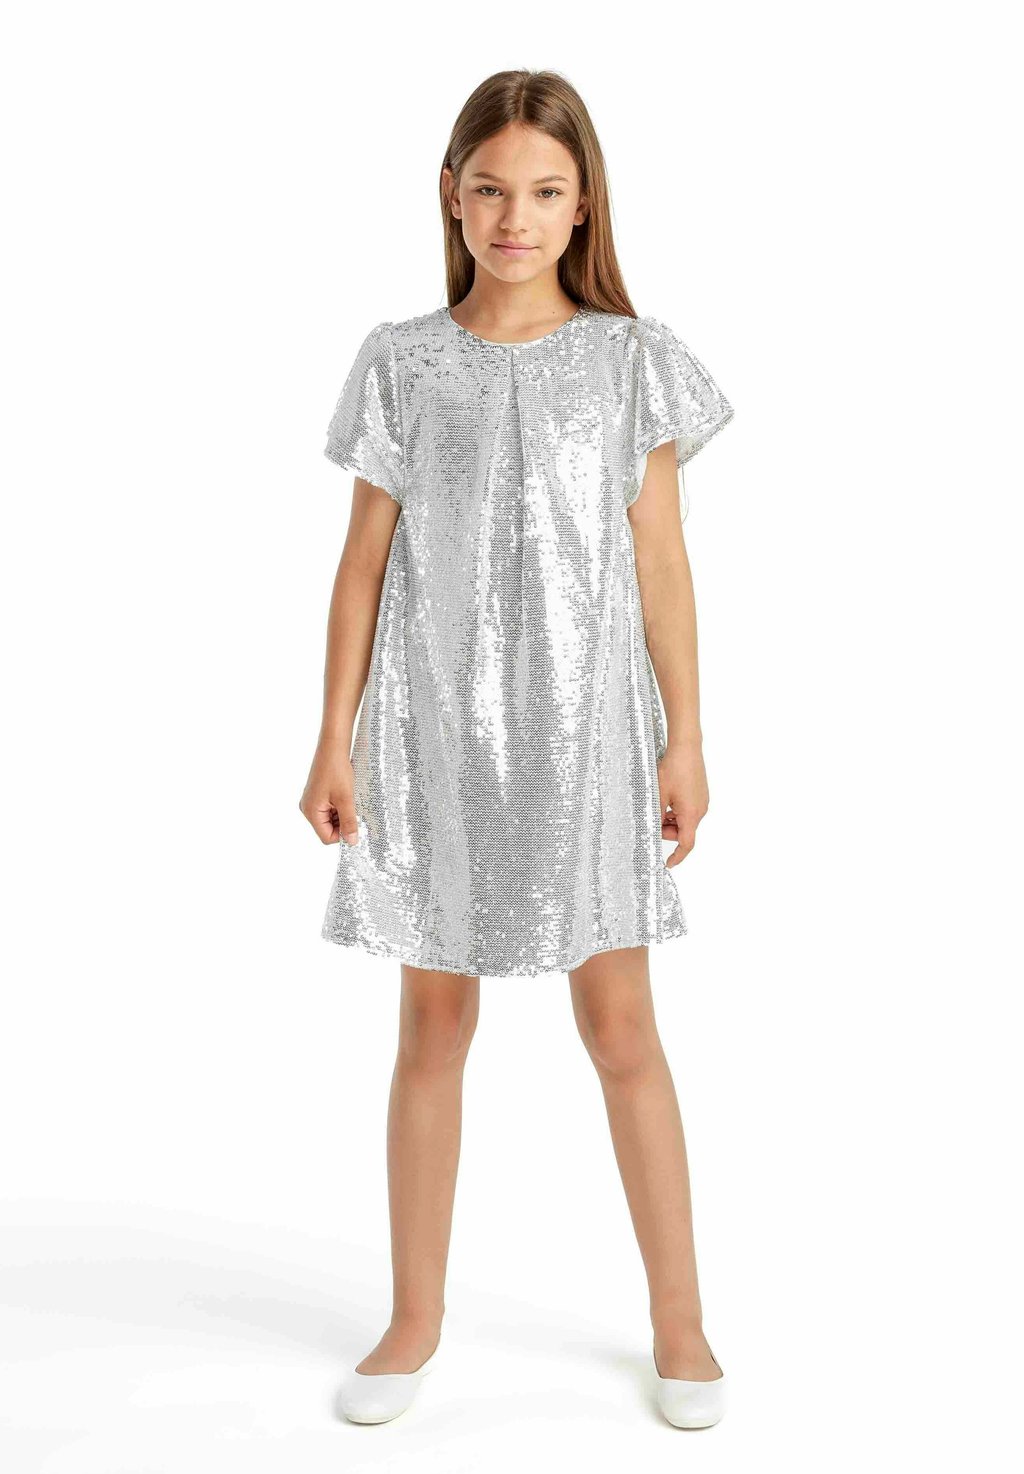 Элегантное платье Standard MINOTI, цвет silvercoloured элегантное платье standard minoti розовый